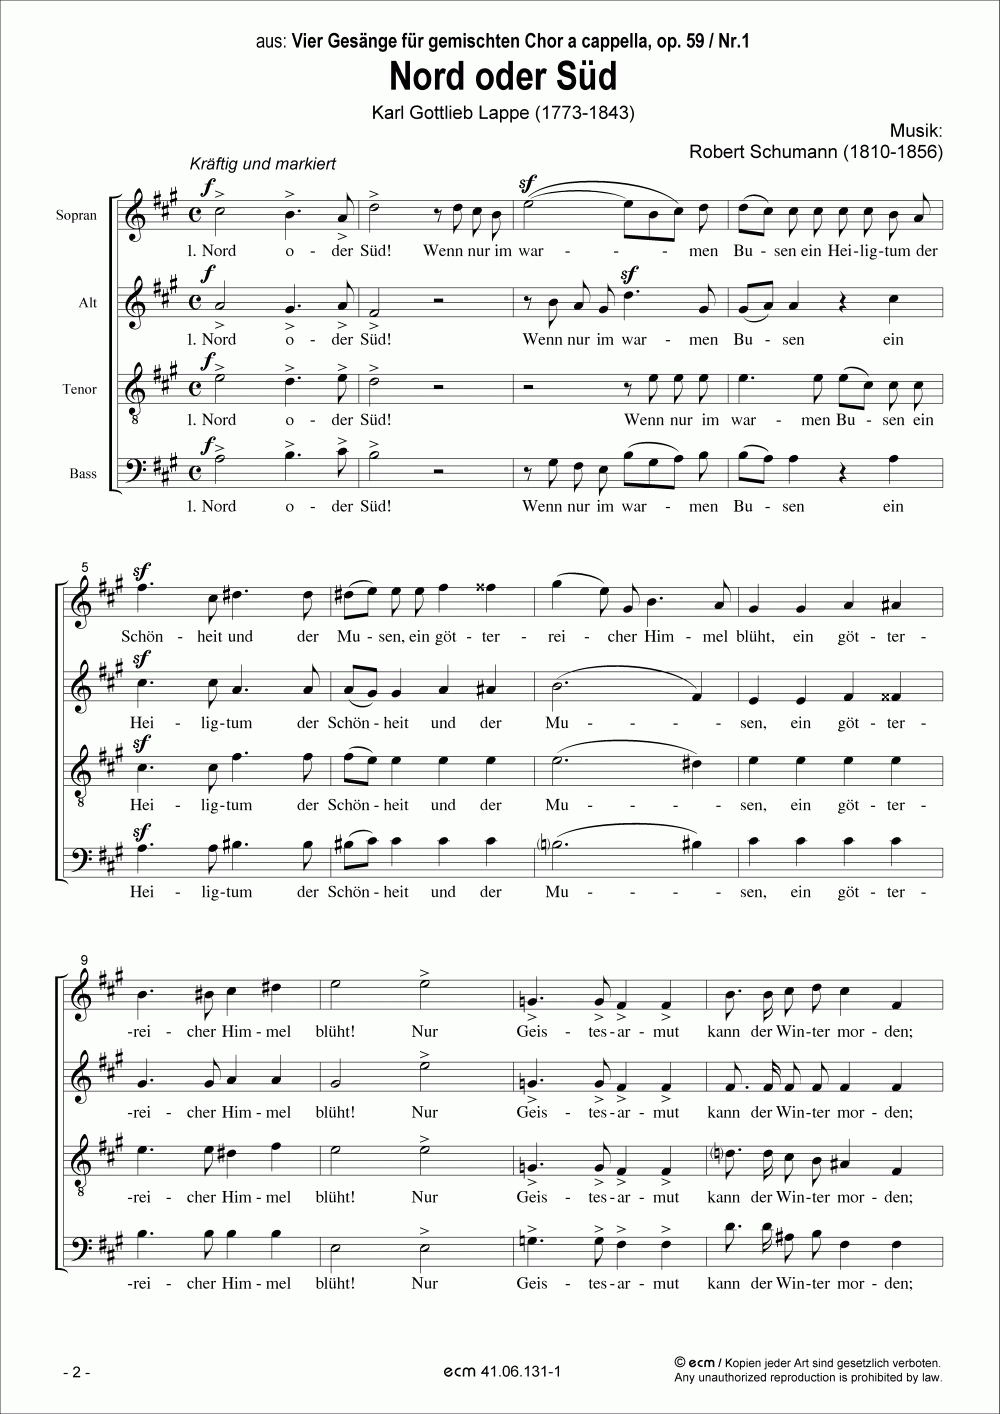 Nord oder Süd (op.59, No.1)